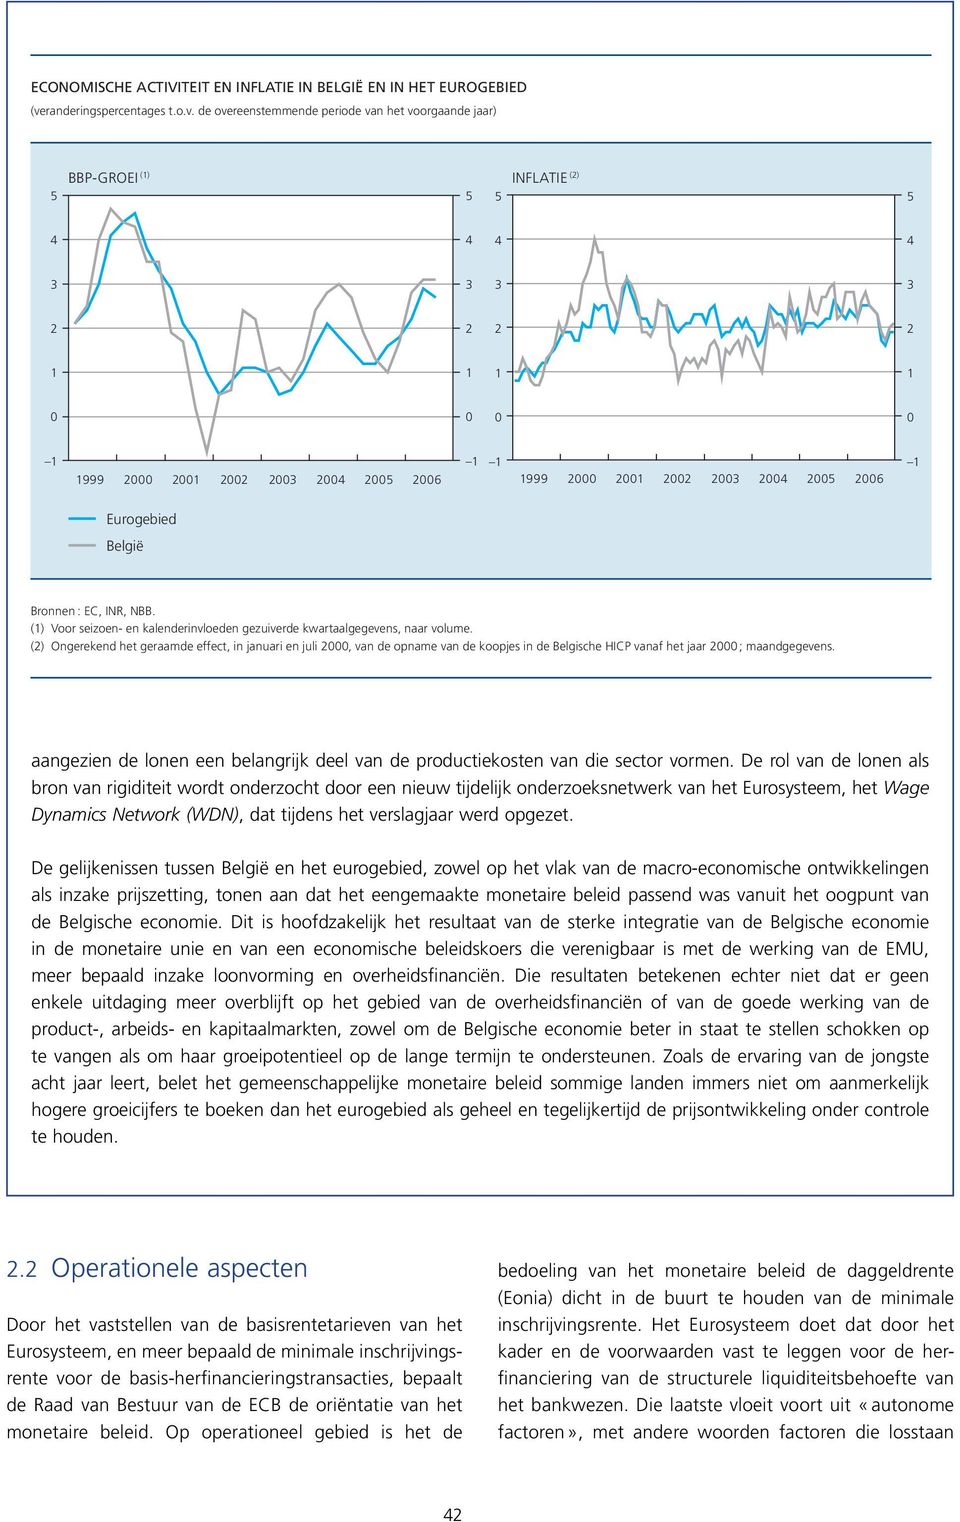 () Ongerekend het geraamde effect, in januari en juli, van de opname van de koopjes in de Belgische HICP vanaf het jaar ; maandgegevens.